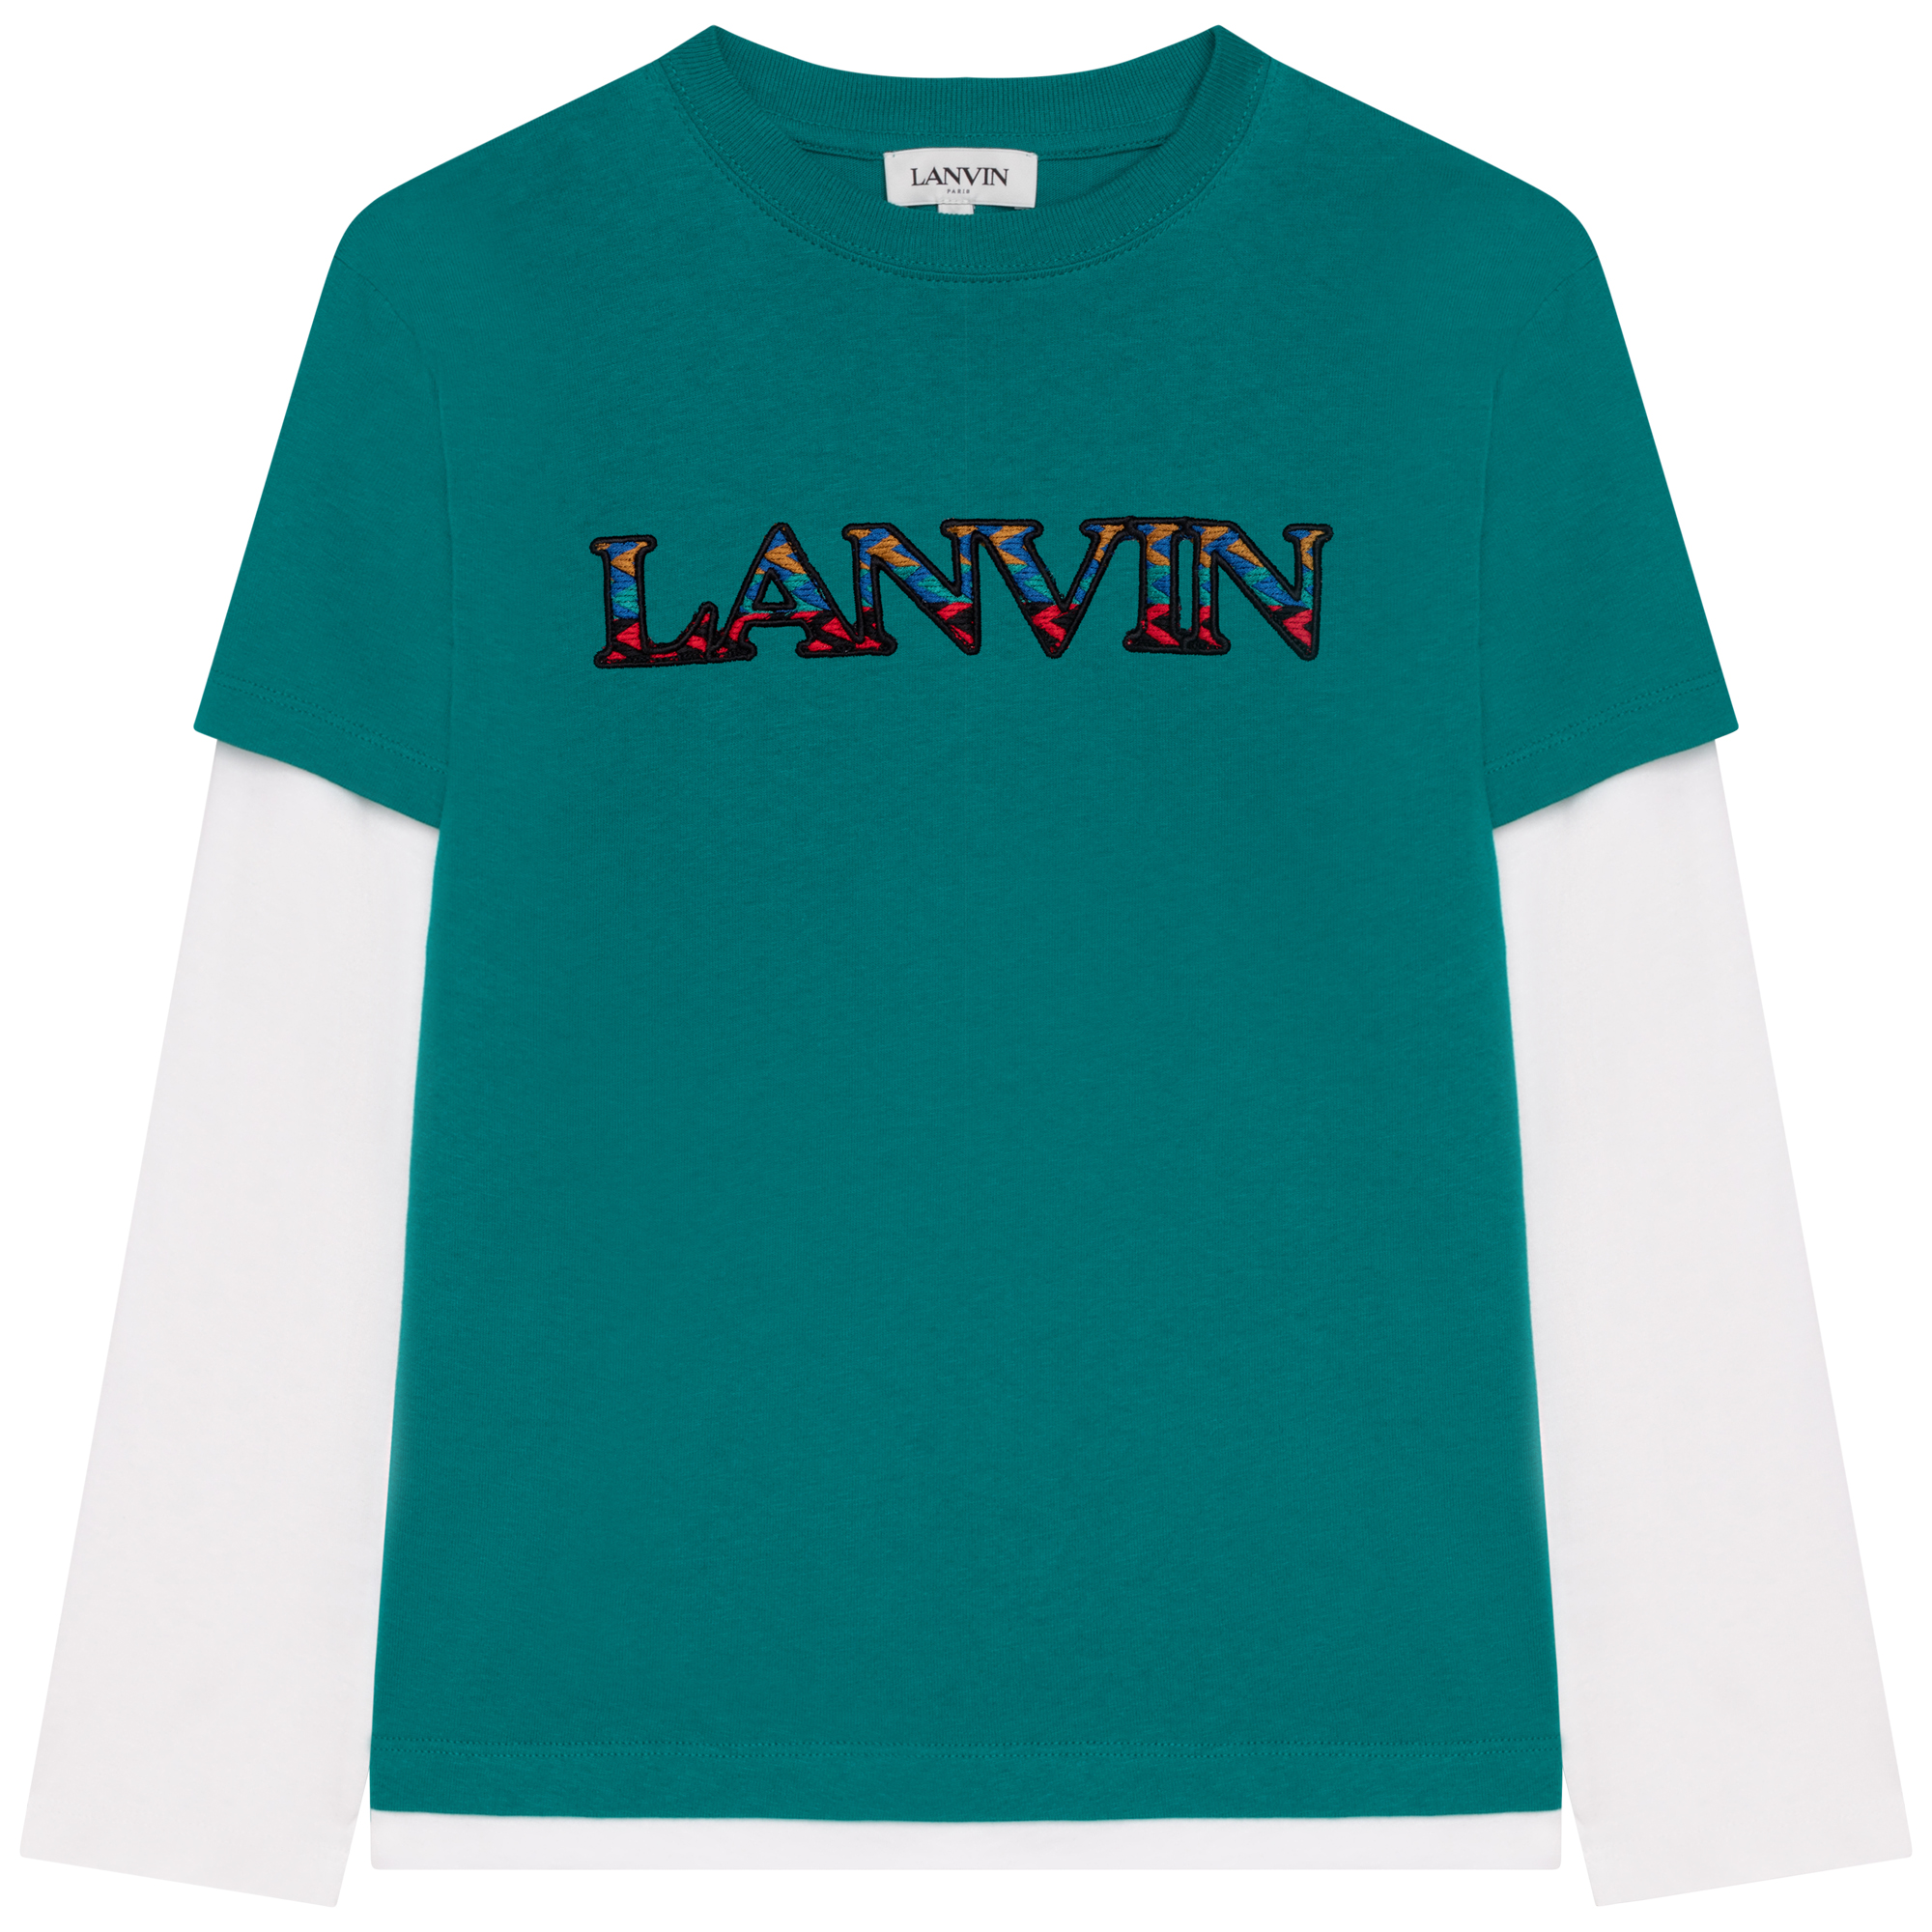 T-shirt à manches longues LANVIN pour GARCON